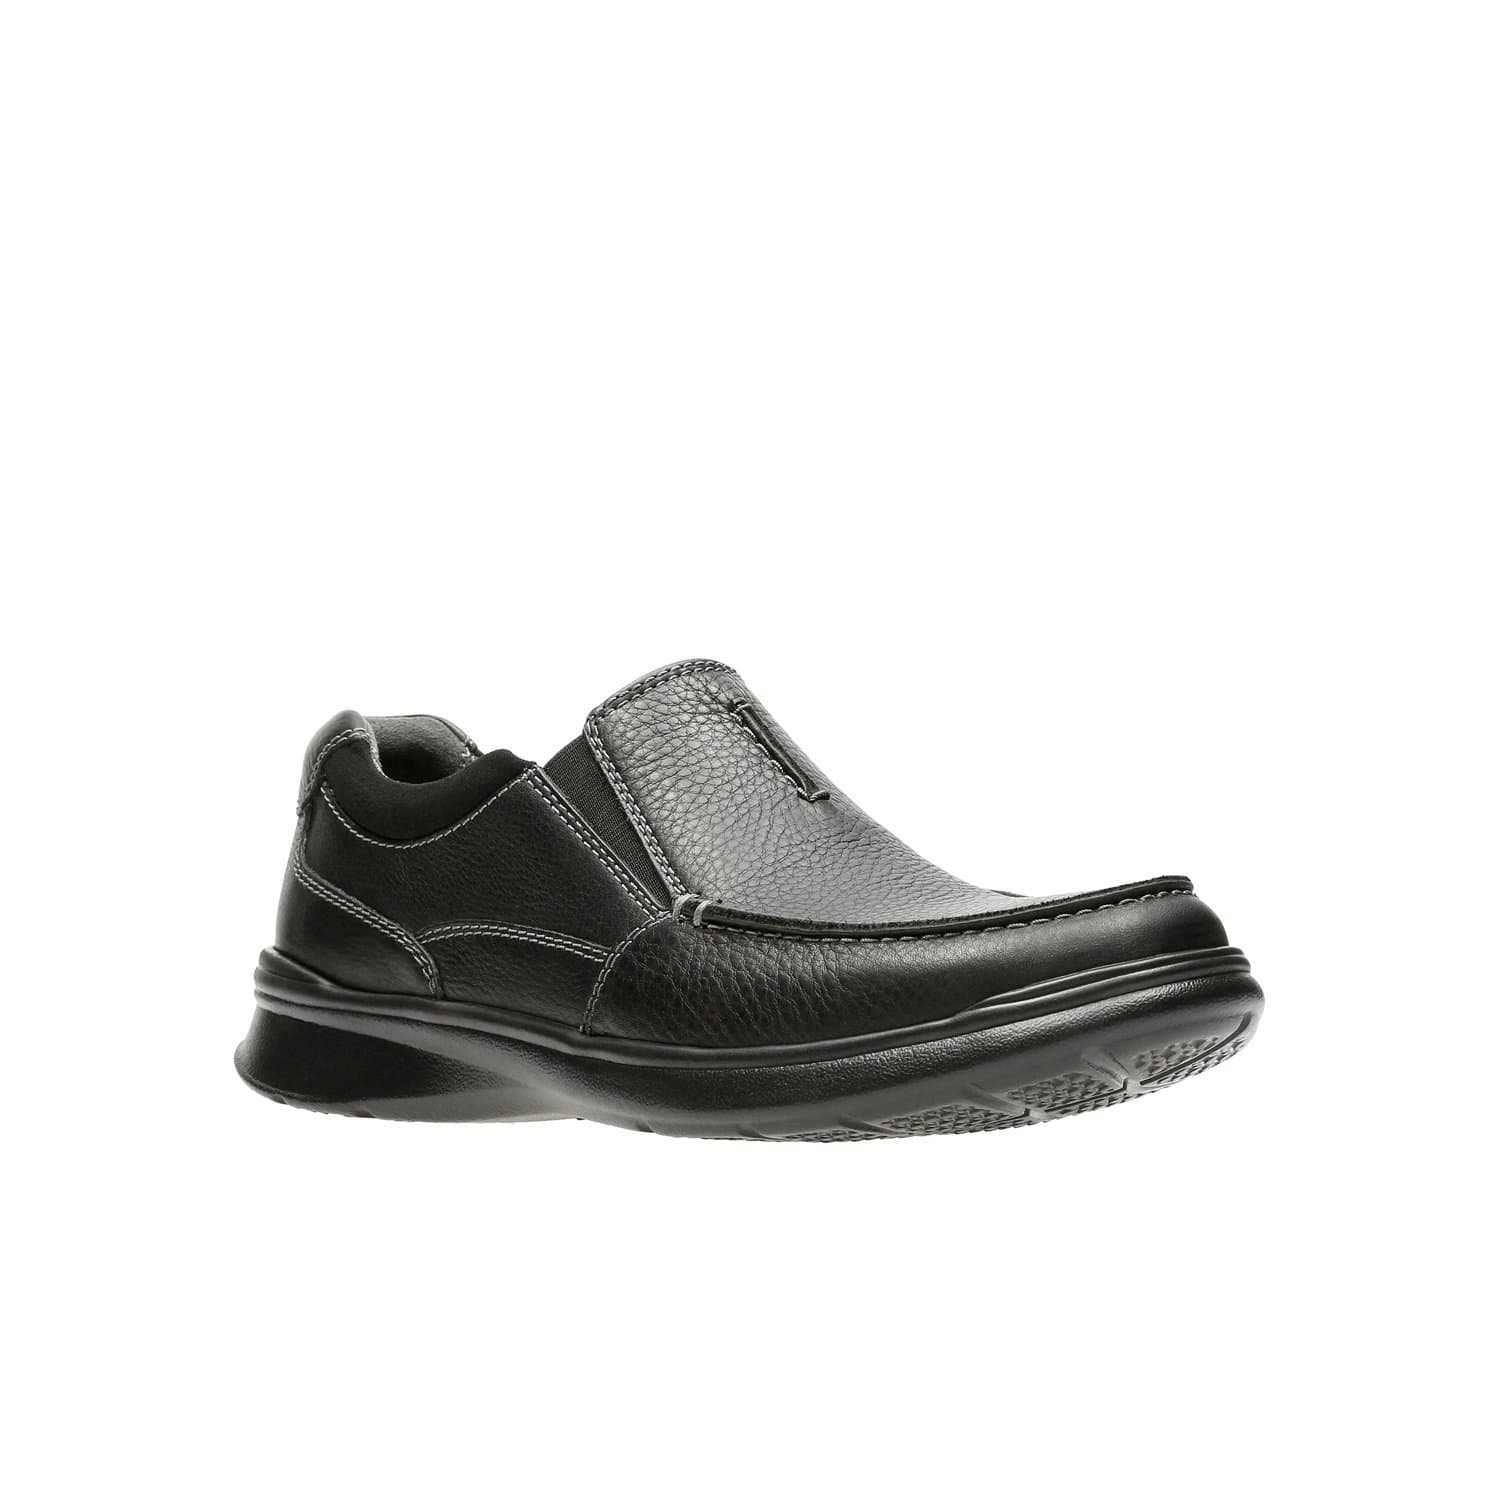 أحذية كلاركس كوتريل فري للرجال - أسود - أولي ليا - 26131593